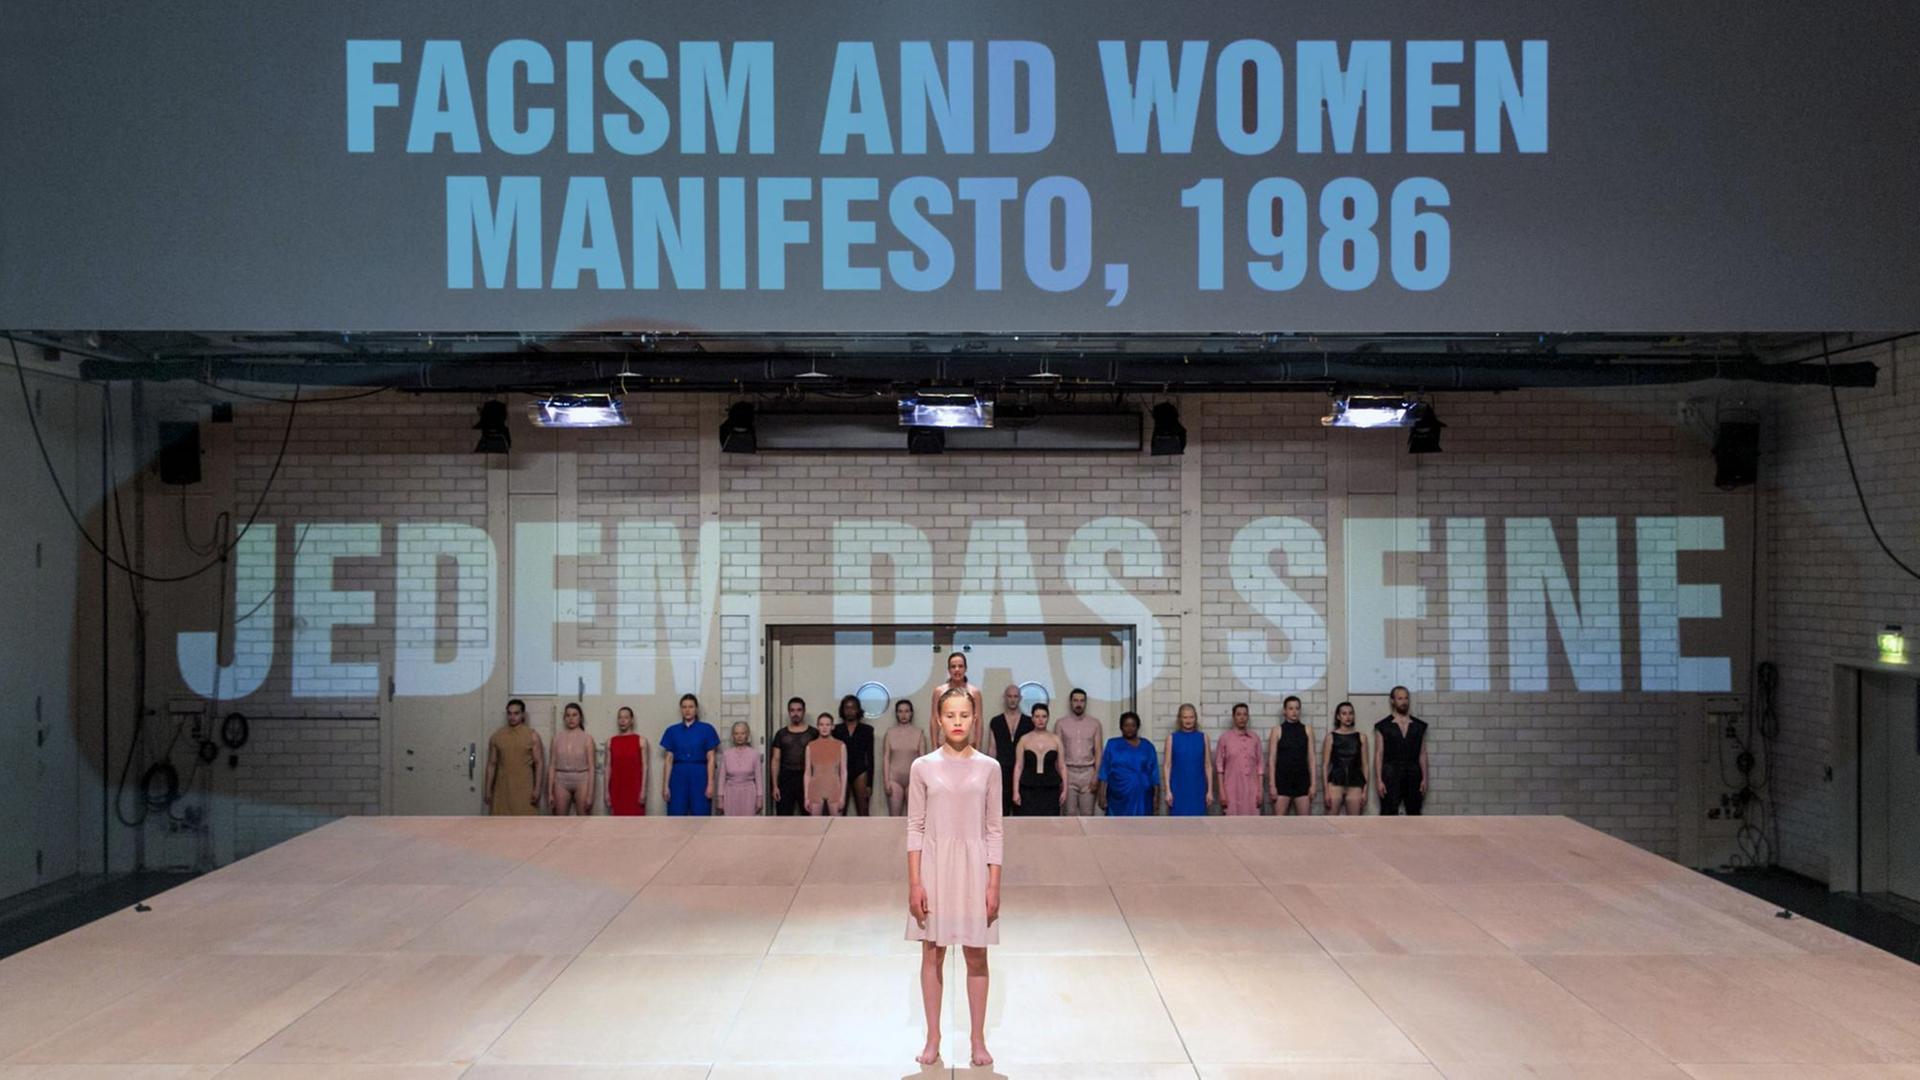 Eine Frau steht auf einer Theaterbühne, im Hintergrund stehen die Wörter: "Facism and Woman Manifesto, 1986" und "Jedem das seine"